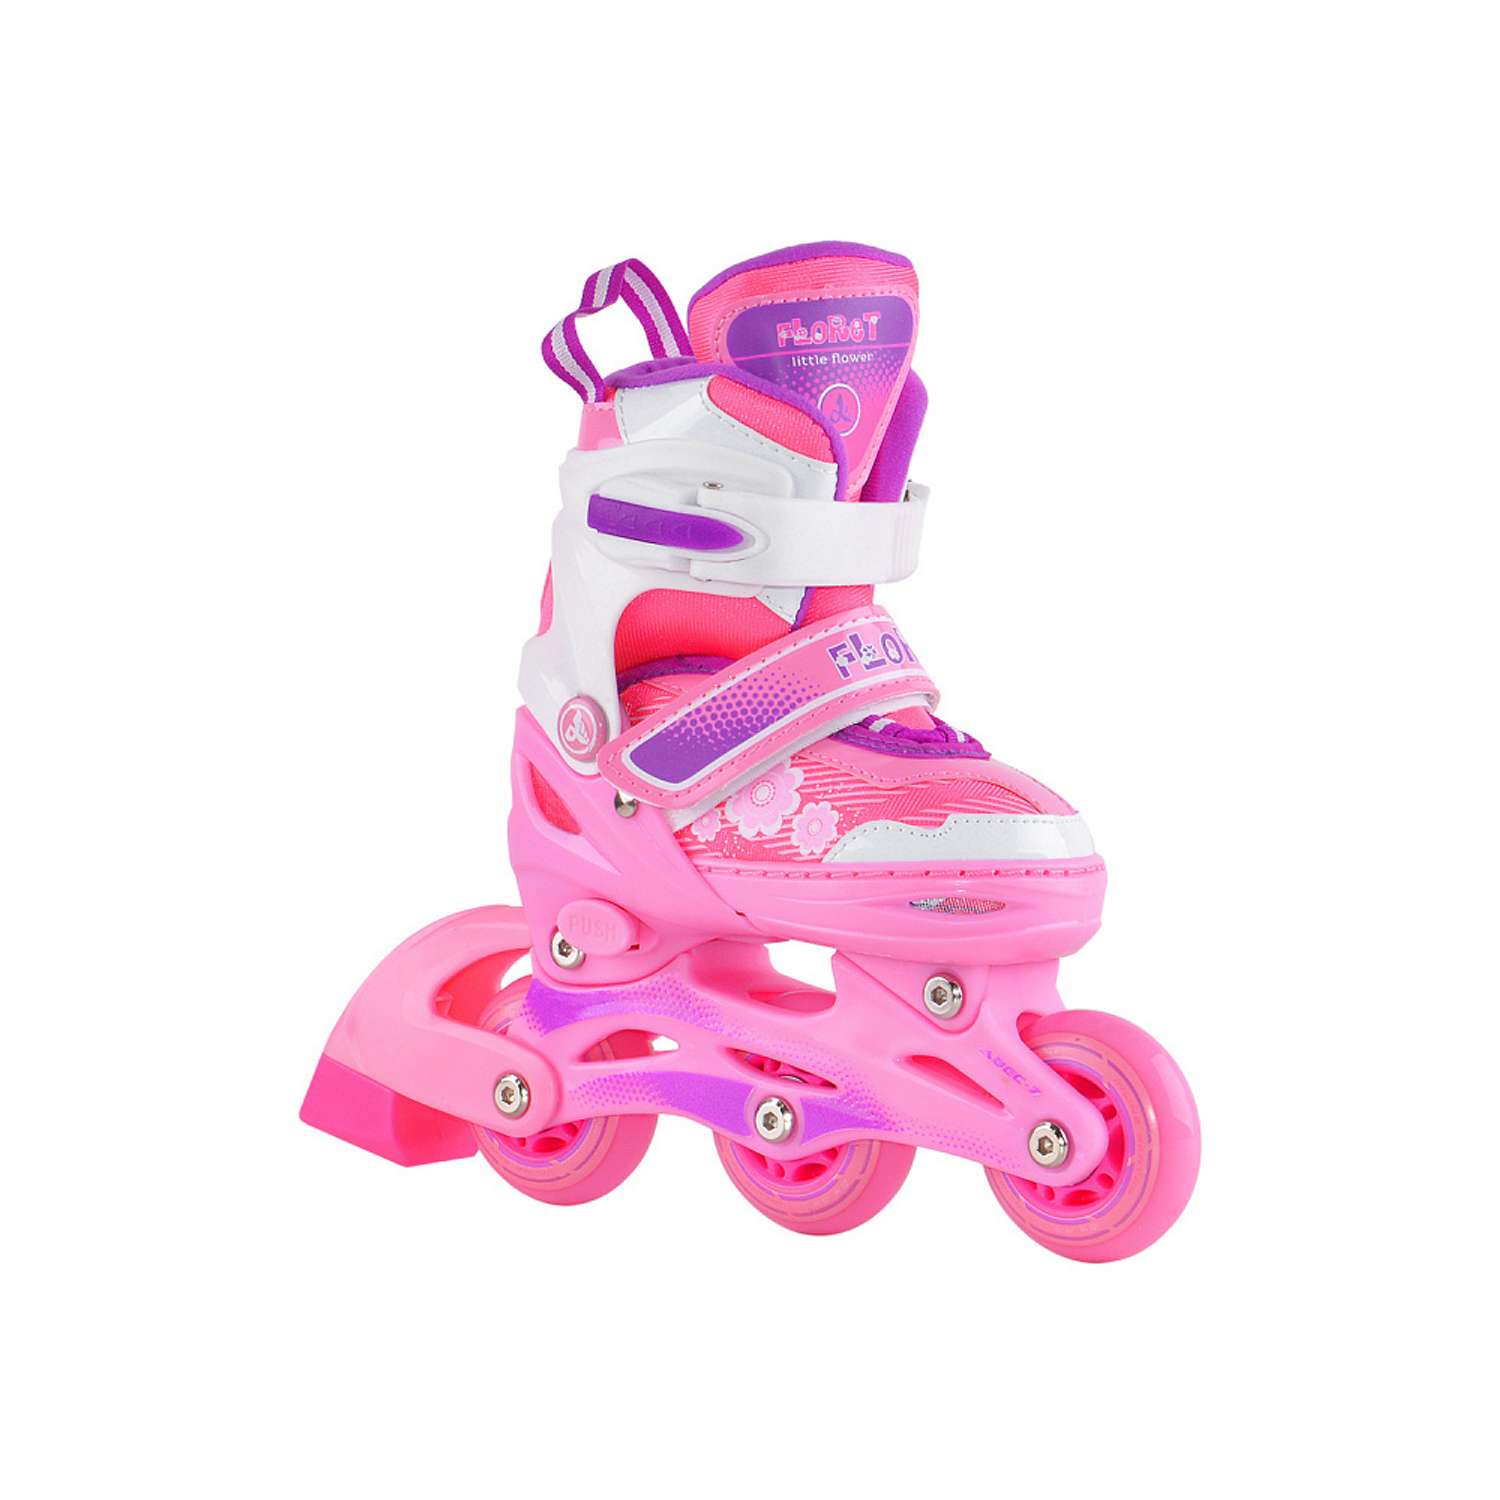 Набор роликовые коньки Alpha Caprice раздвижные Floret White Pink Violet шлем и набор защиты в сумке размер XS 27-30 - фото 2